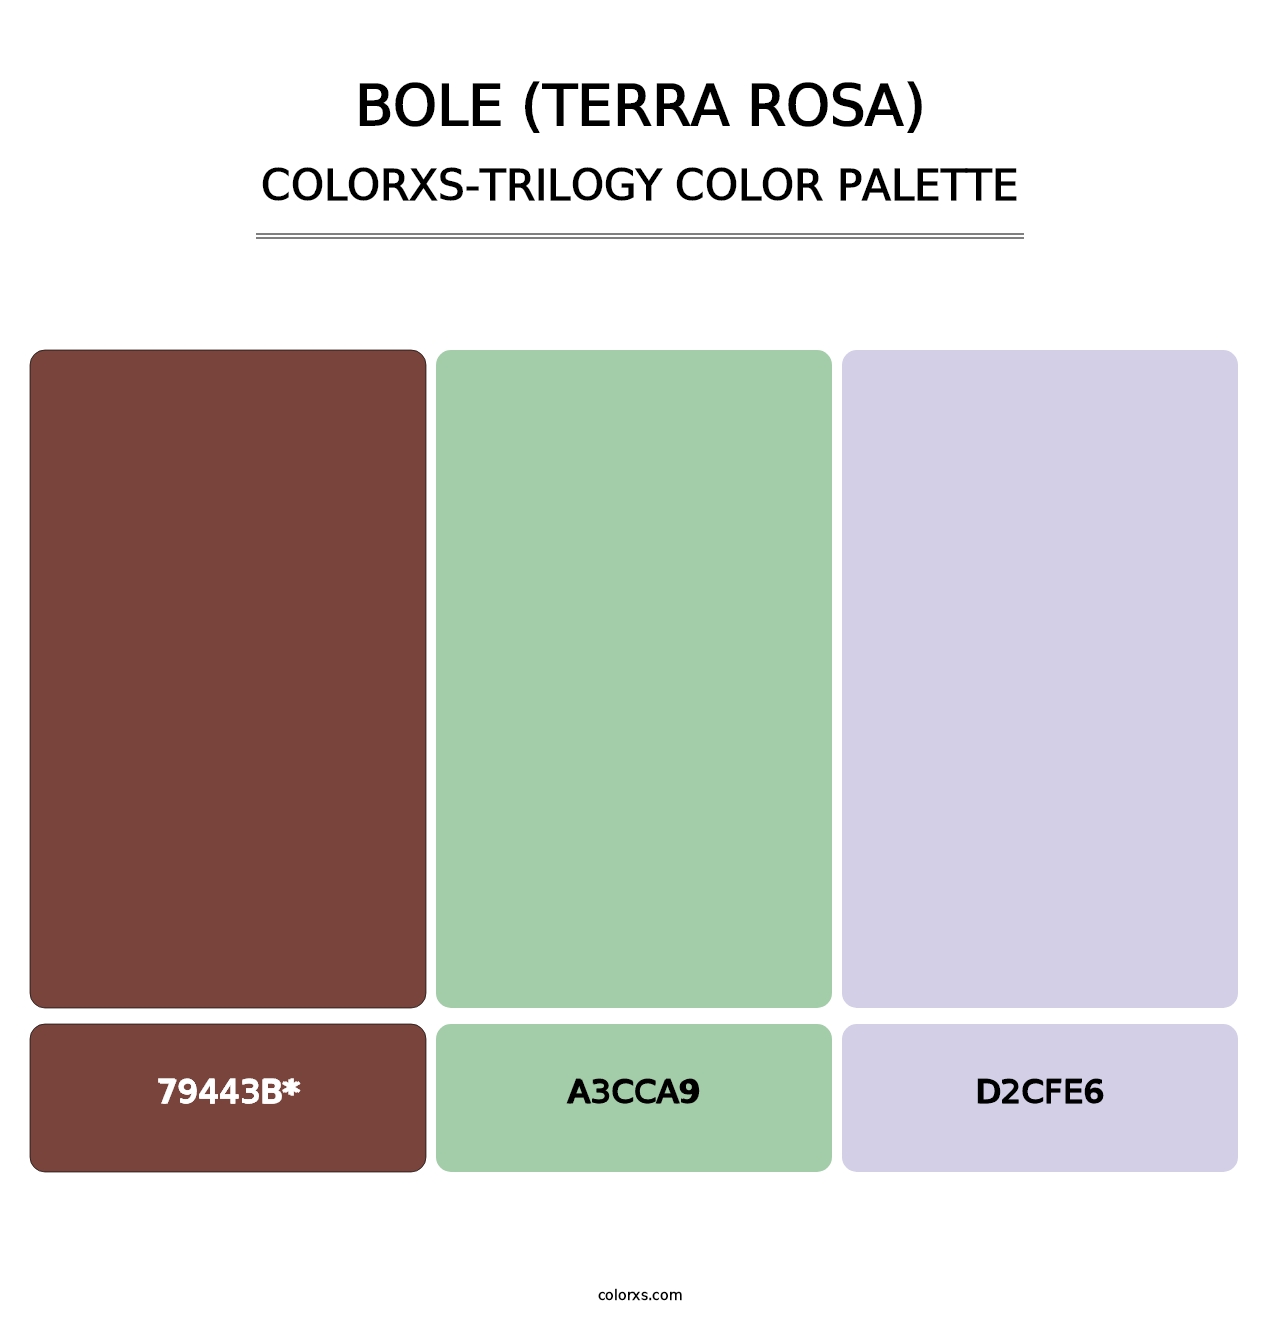 Bole (Terra Rosa) - Colorxs Trilogy Palette